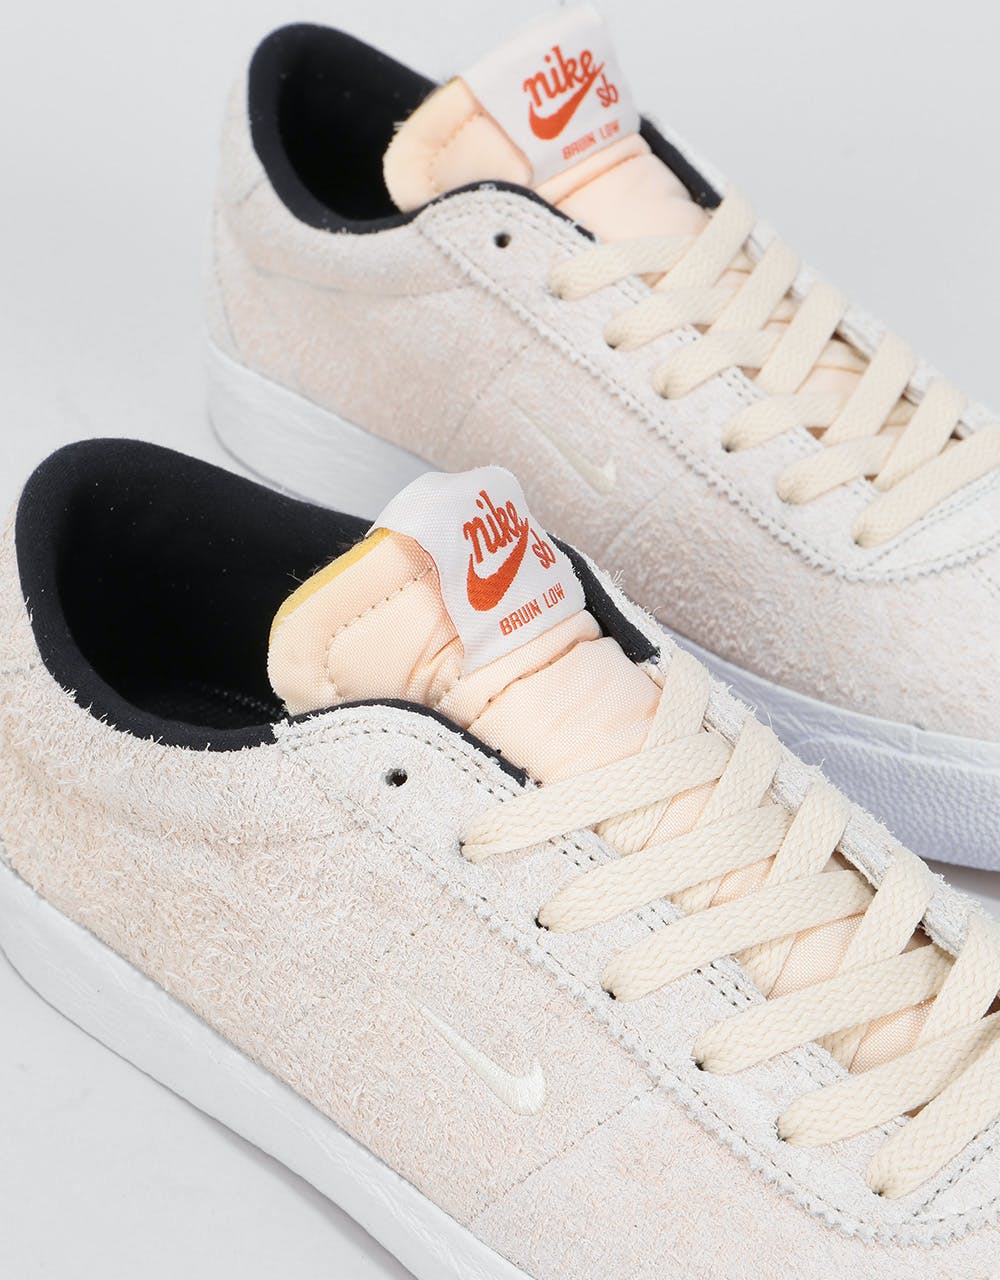 Nike SB Zoom Bruin Skate Shoes - Light Cream/Light Cream-Black-Gum